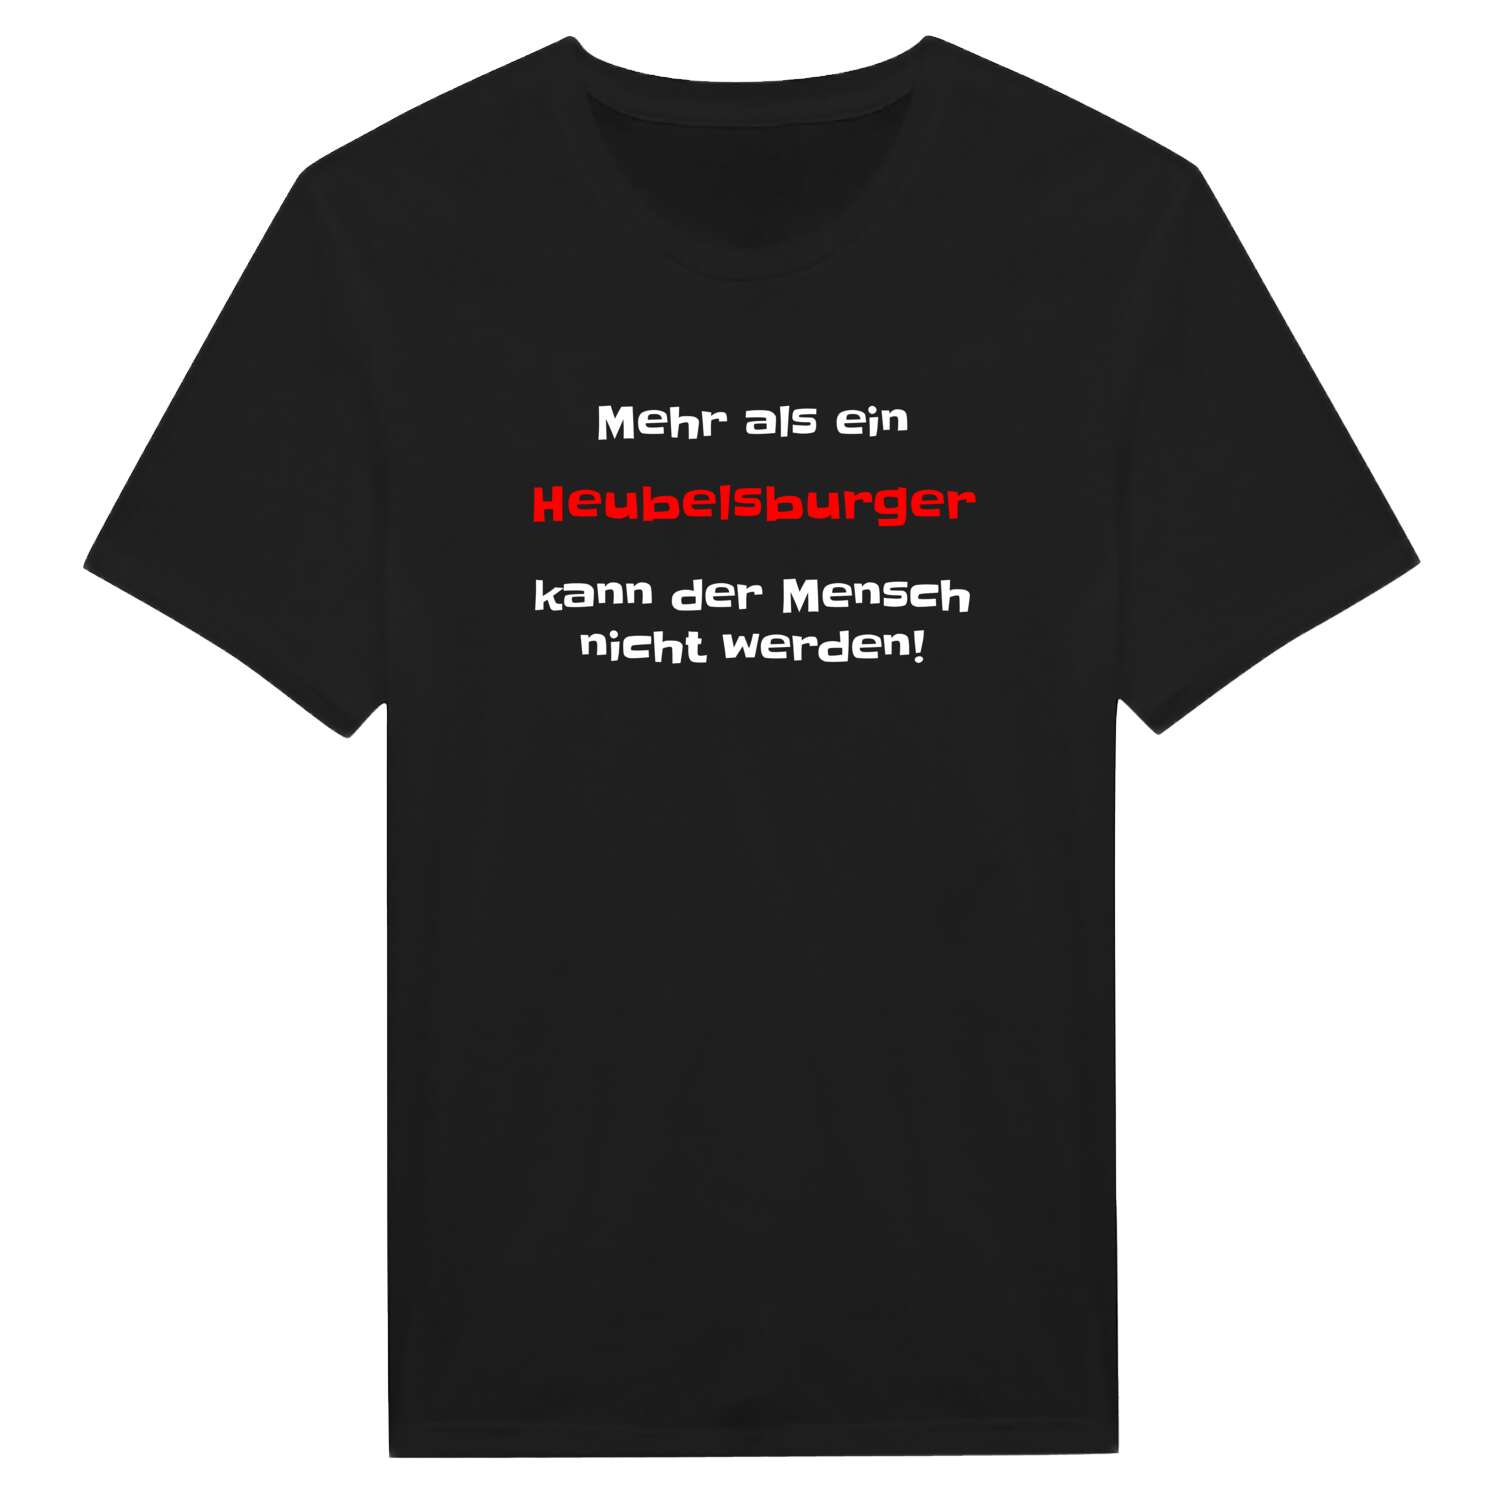 Heubelsburg T-Shirt »Mehr als ein«